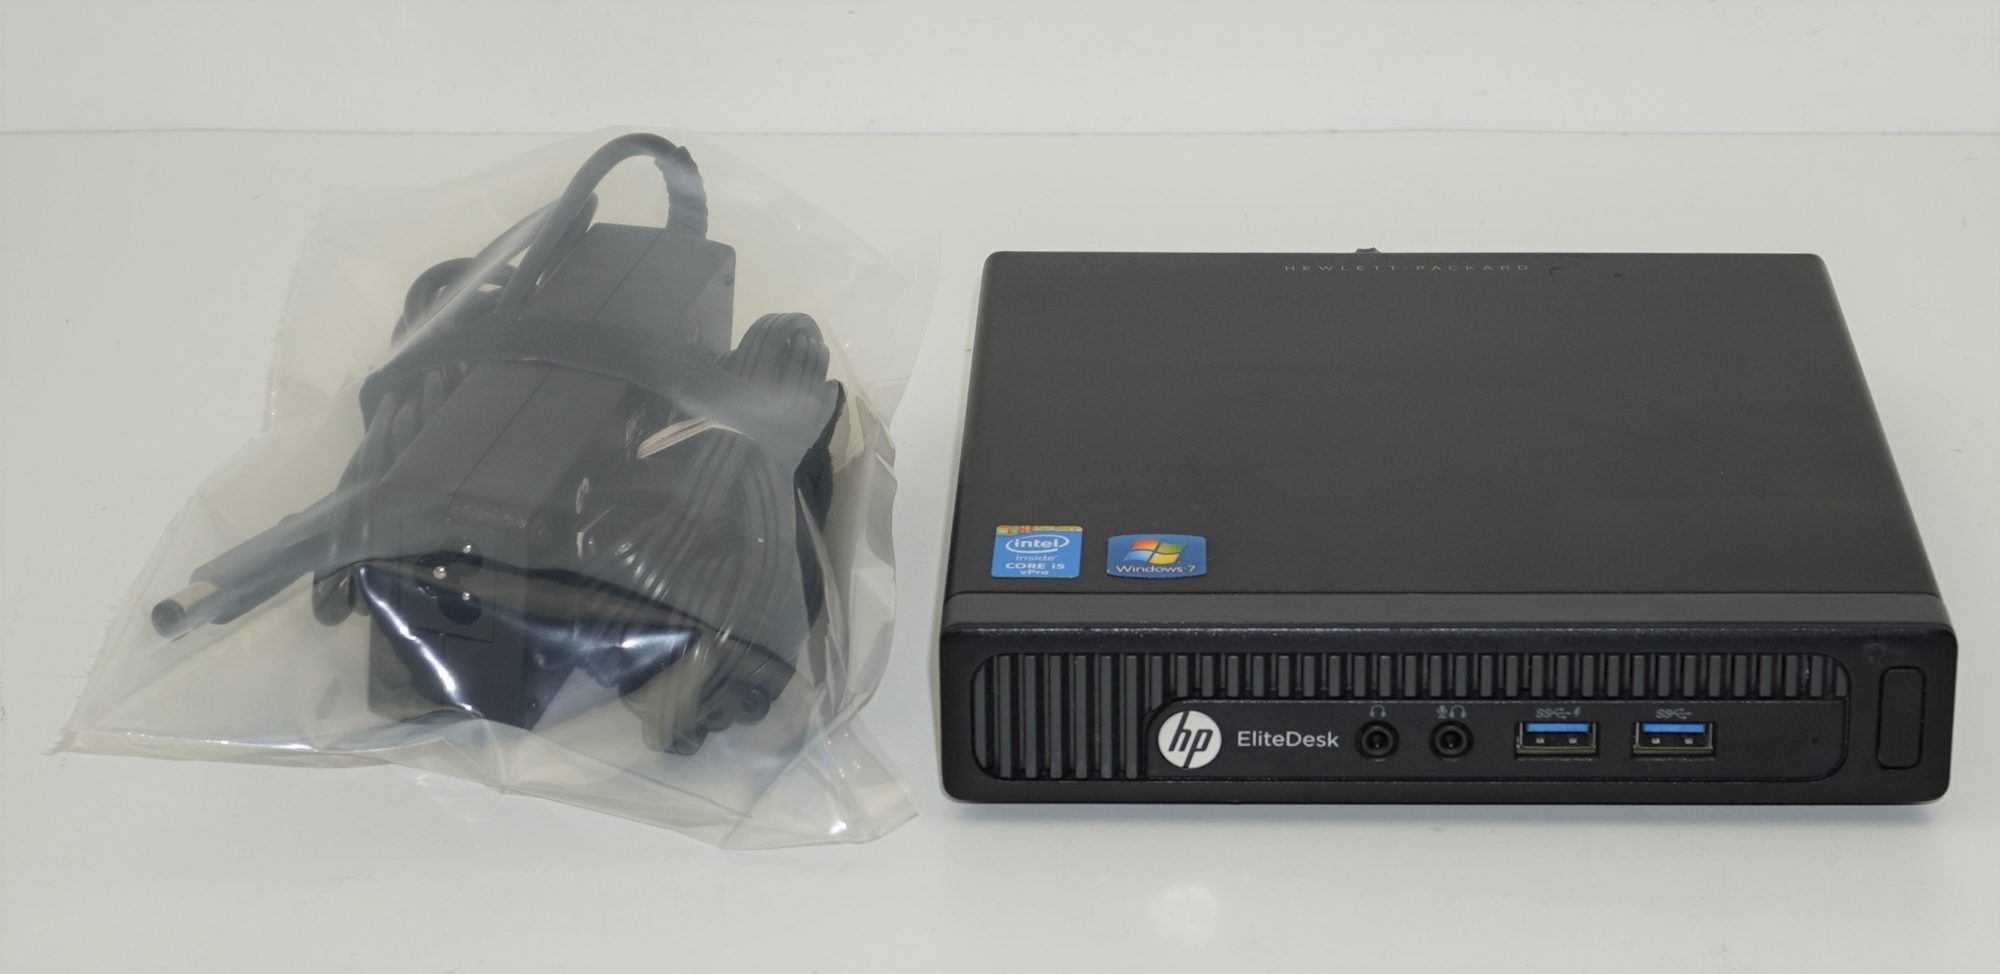 HP EliteDesk 800 G1 DM | i5-4590 @ 2.0GHz | 8GB DDR3 | 500GB HDD | Windows  10 Professional